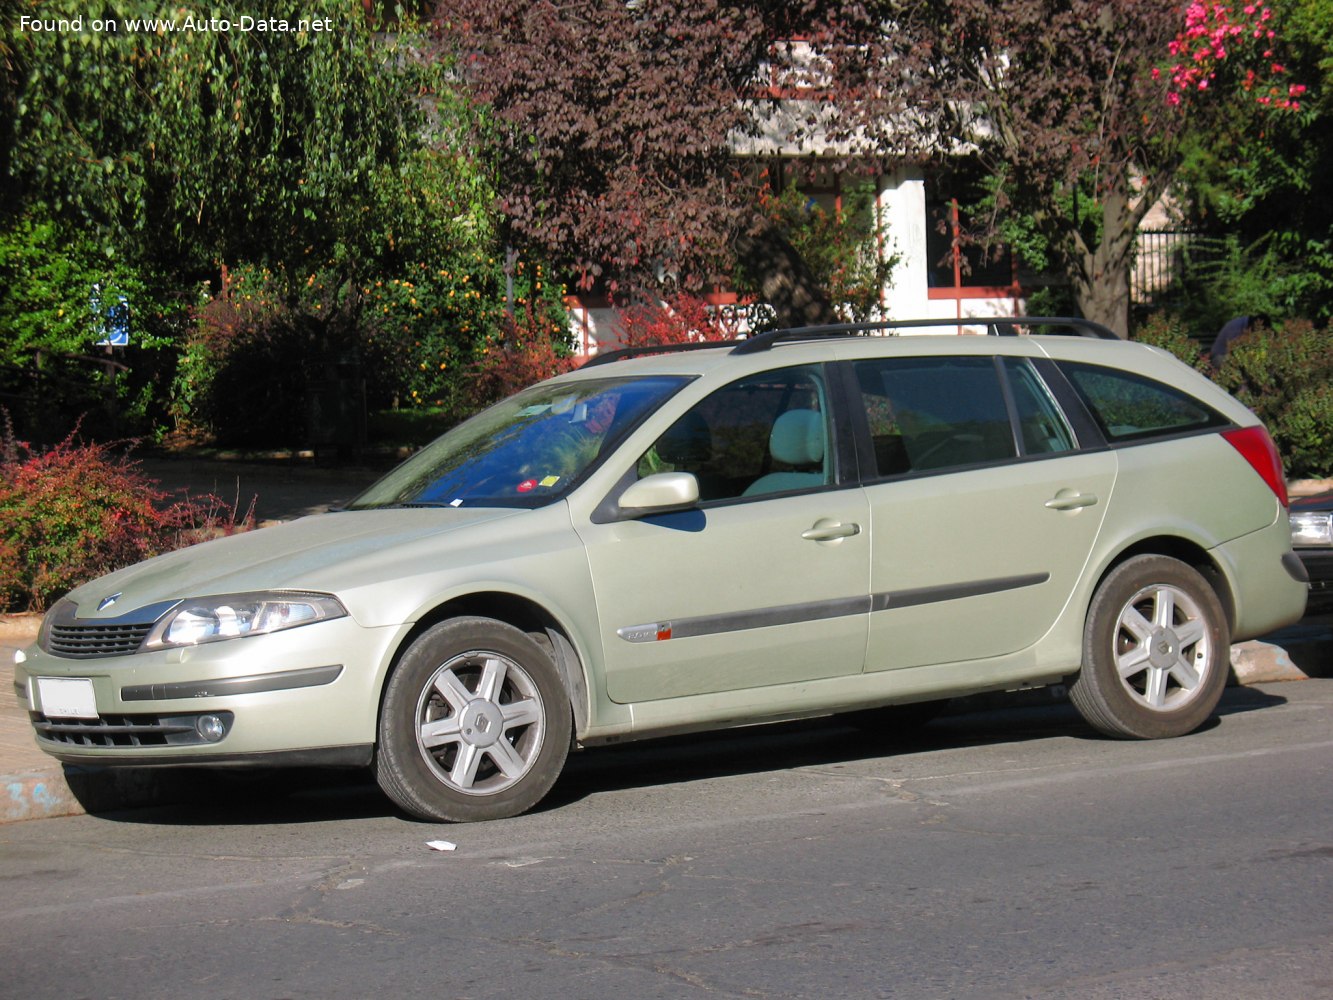 2007 Renault Laguna III Grandtour 2,0 16V (140 Hp)  Technical specs, data,  fuel consumption, Dimensions